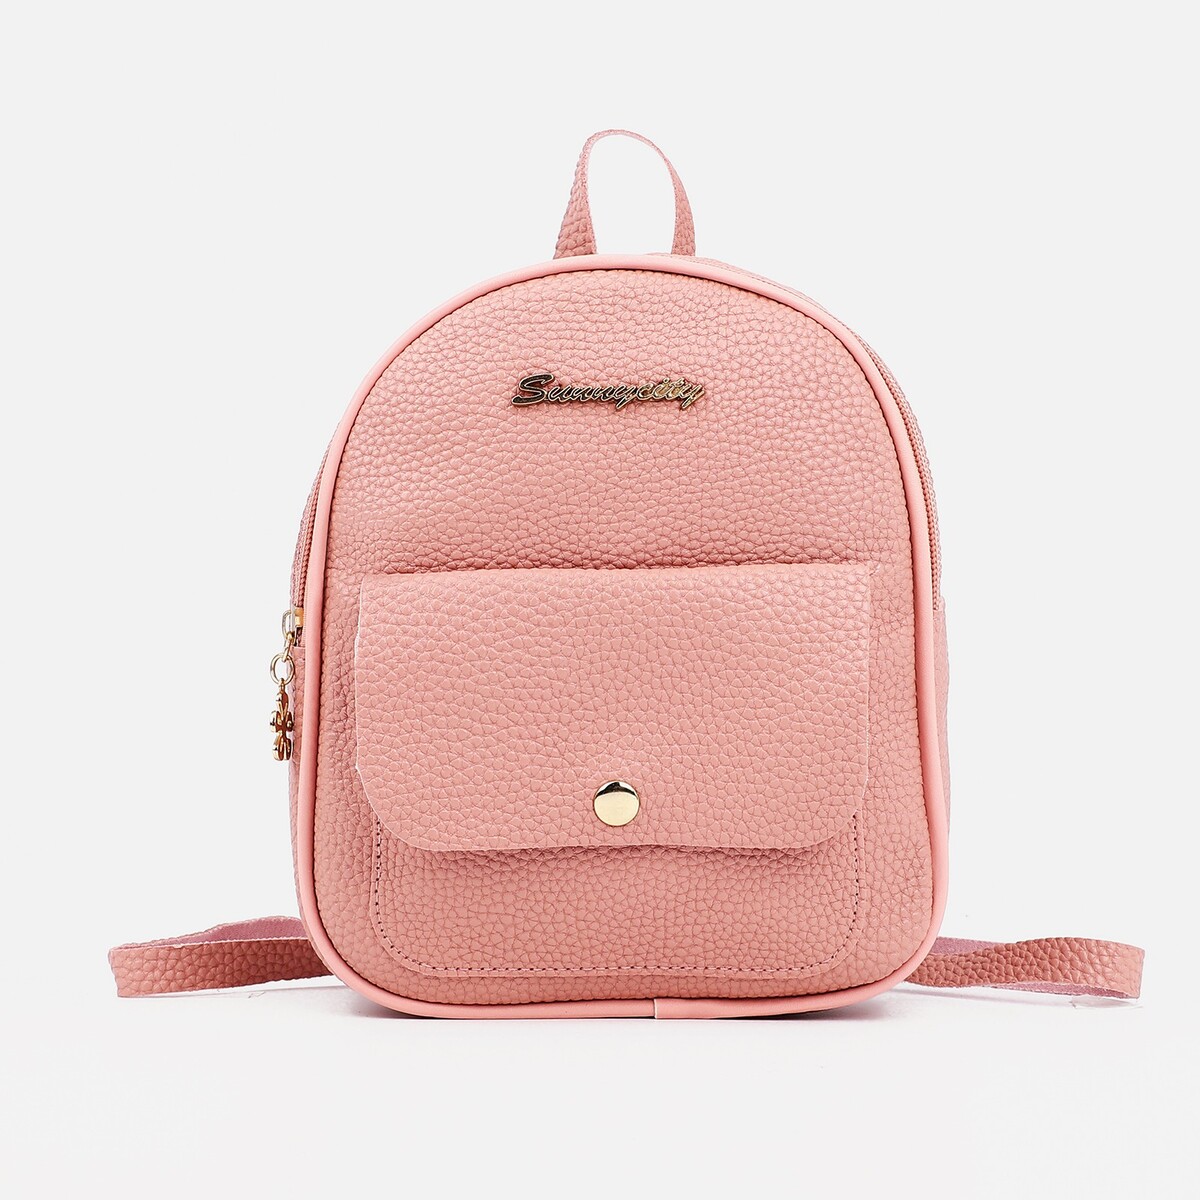 Мини-рюкзак женский из искусственной кожи на молнии, 1 карман, цвет розовый рюкзак школьный на молнии из текстиля наружный карман белый розовый